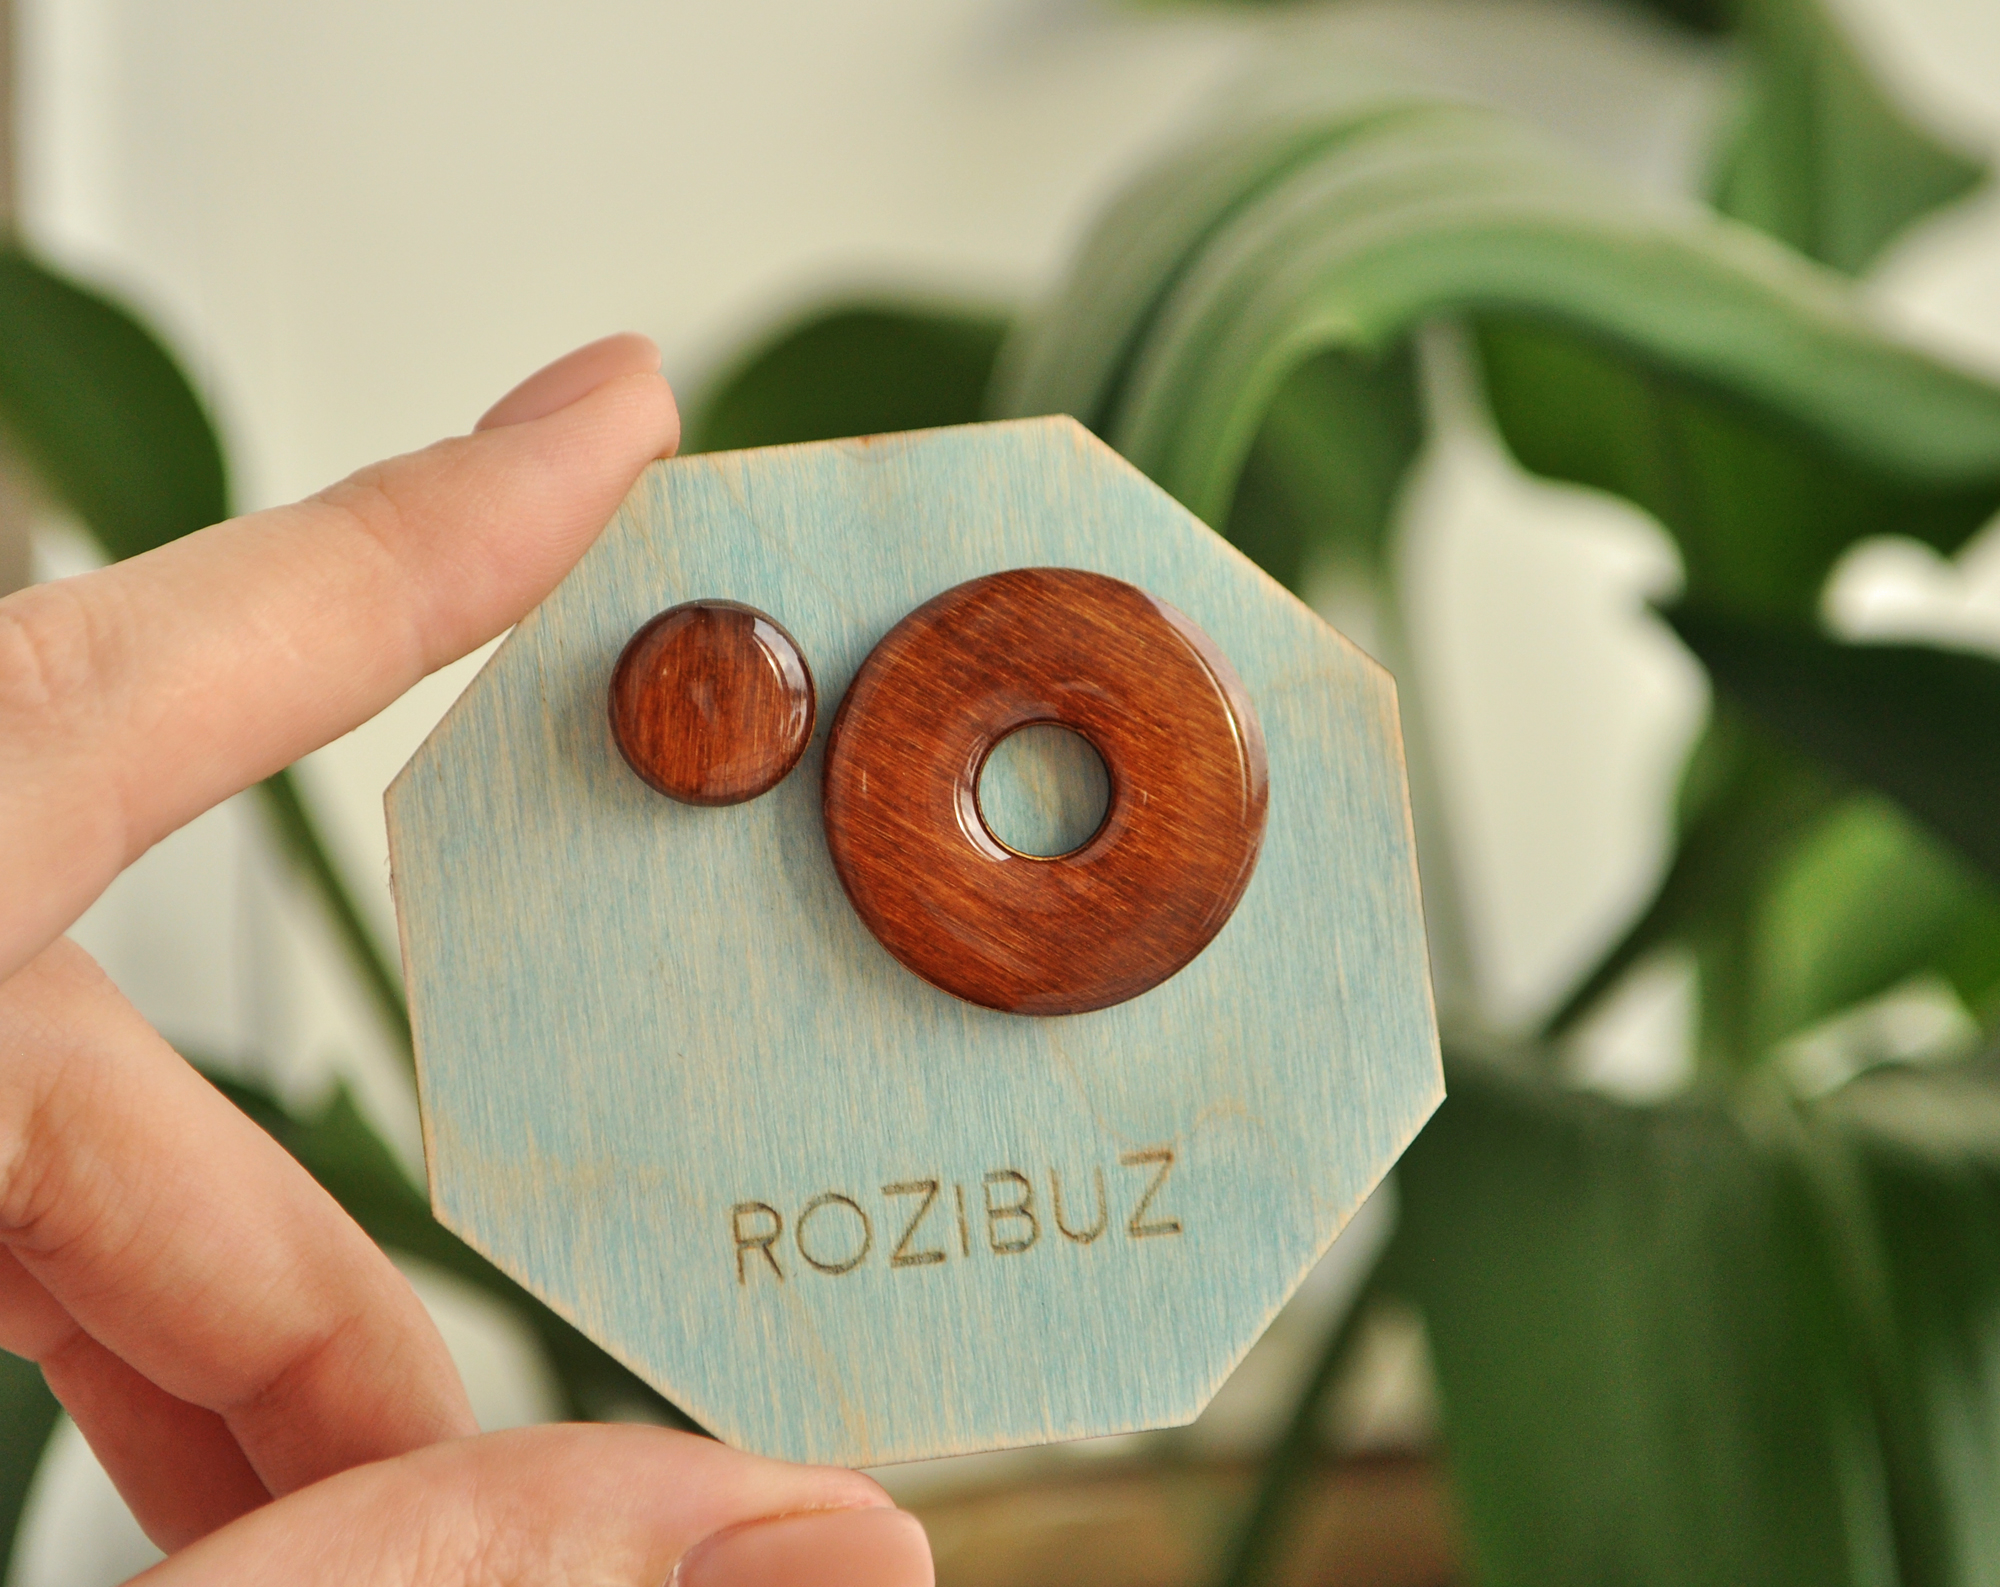 Орех - асимметрия с диском серьги-гвоздики деревянные ручной работы купить